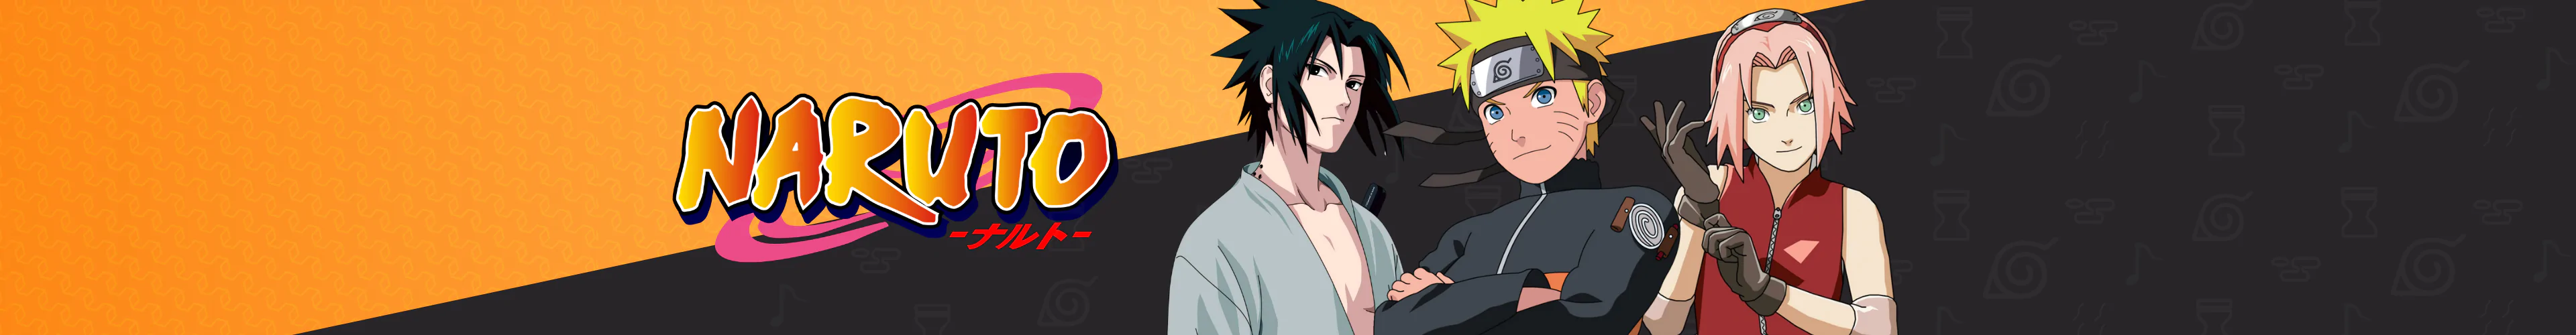 Naruto játékkonzol kiegészítők banner